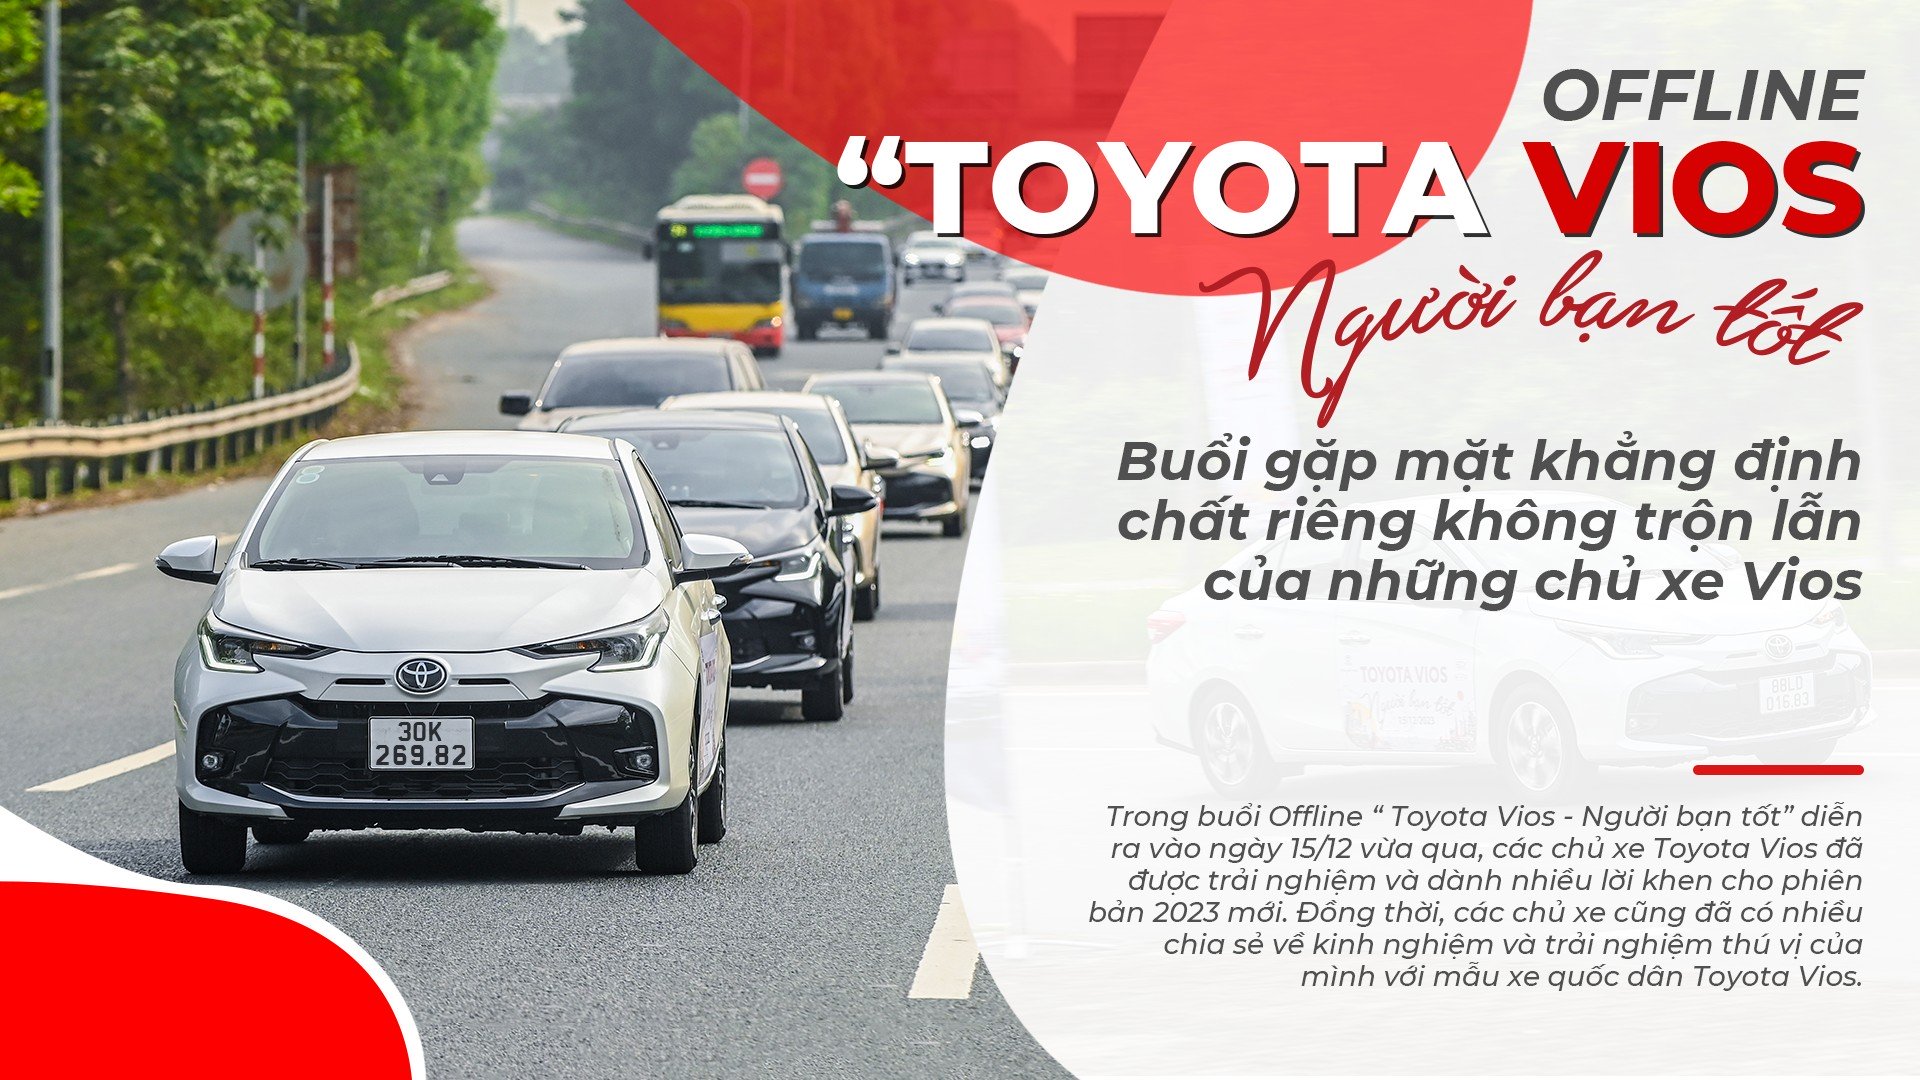 Offline “Toyota Vios - Người bạn tốt”: Buổi gặp mặt khẳng định chất riêng không trộn lẫn của những chủ xe Vios